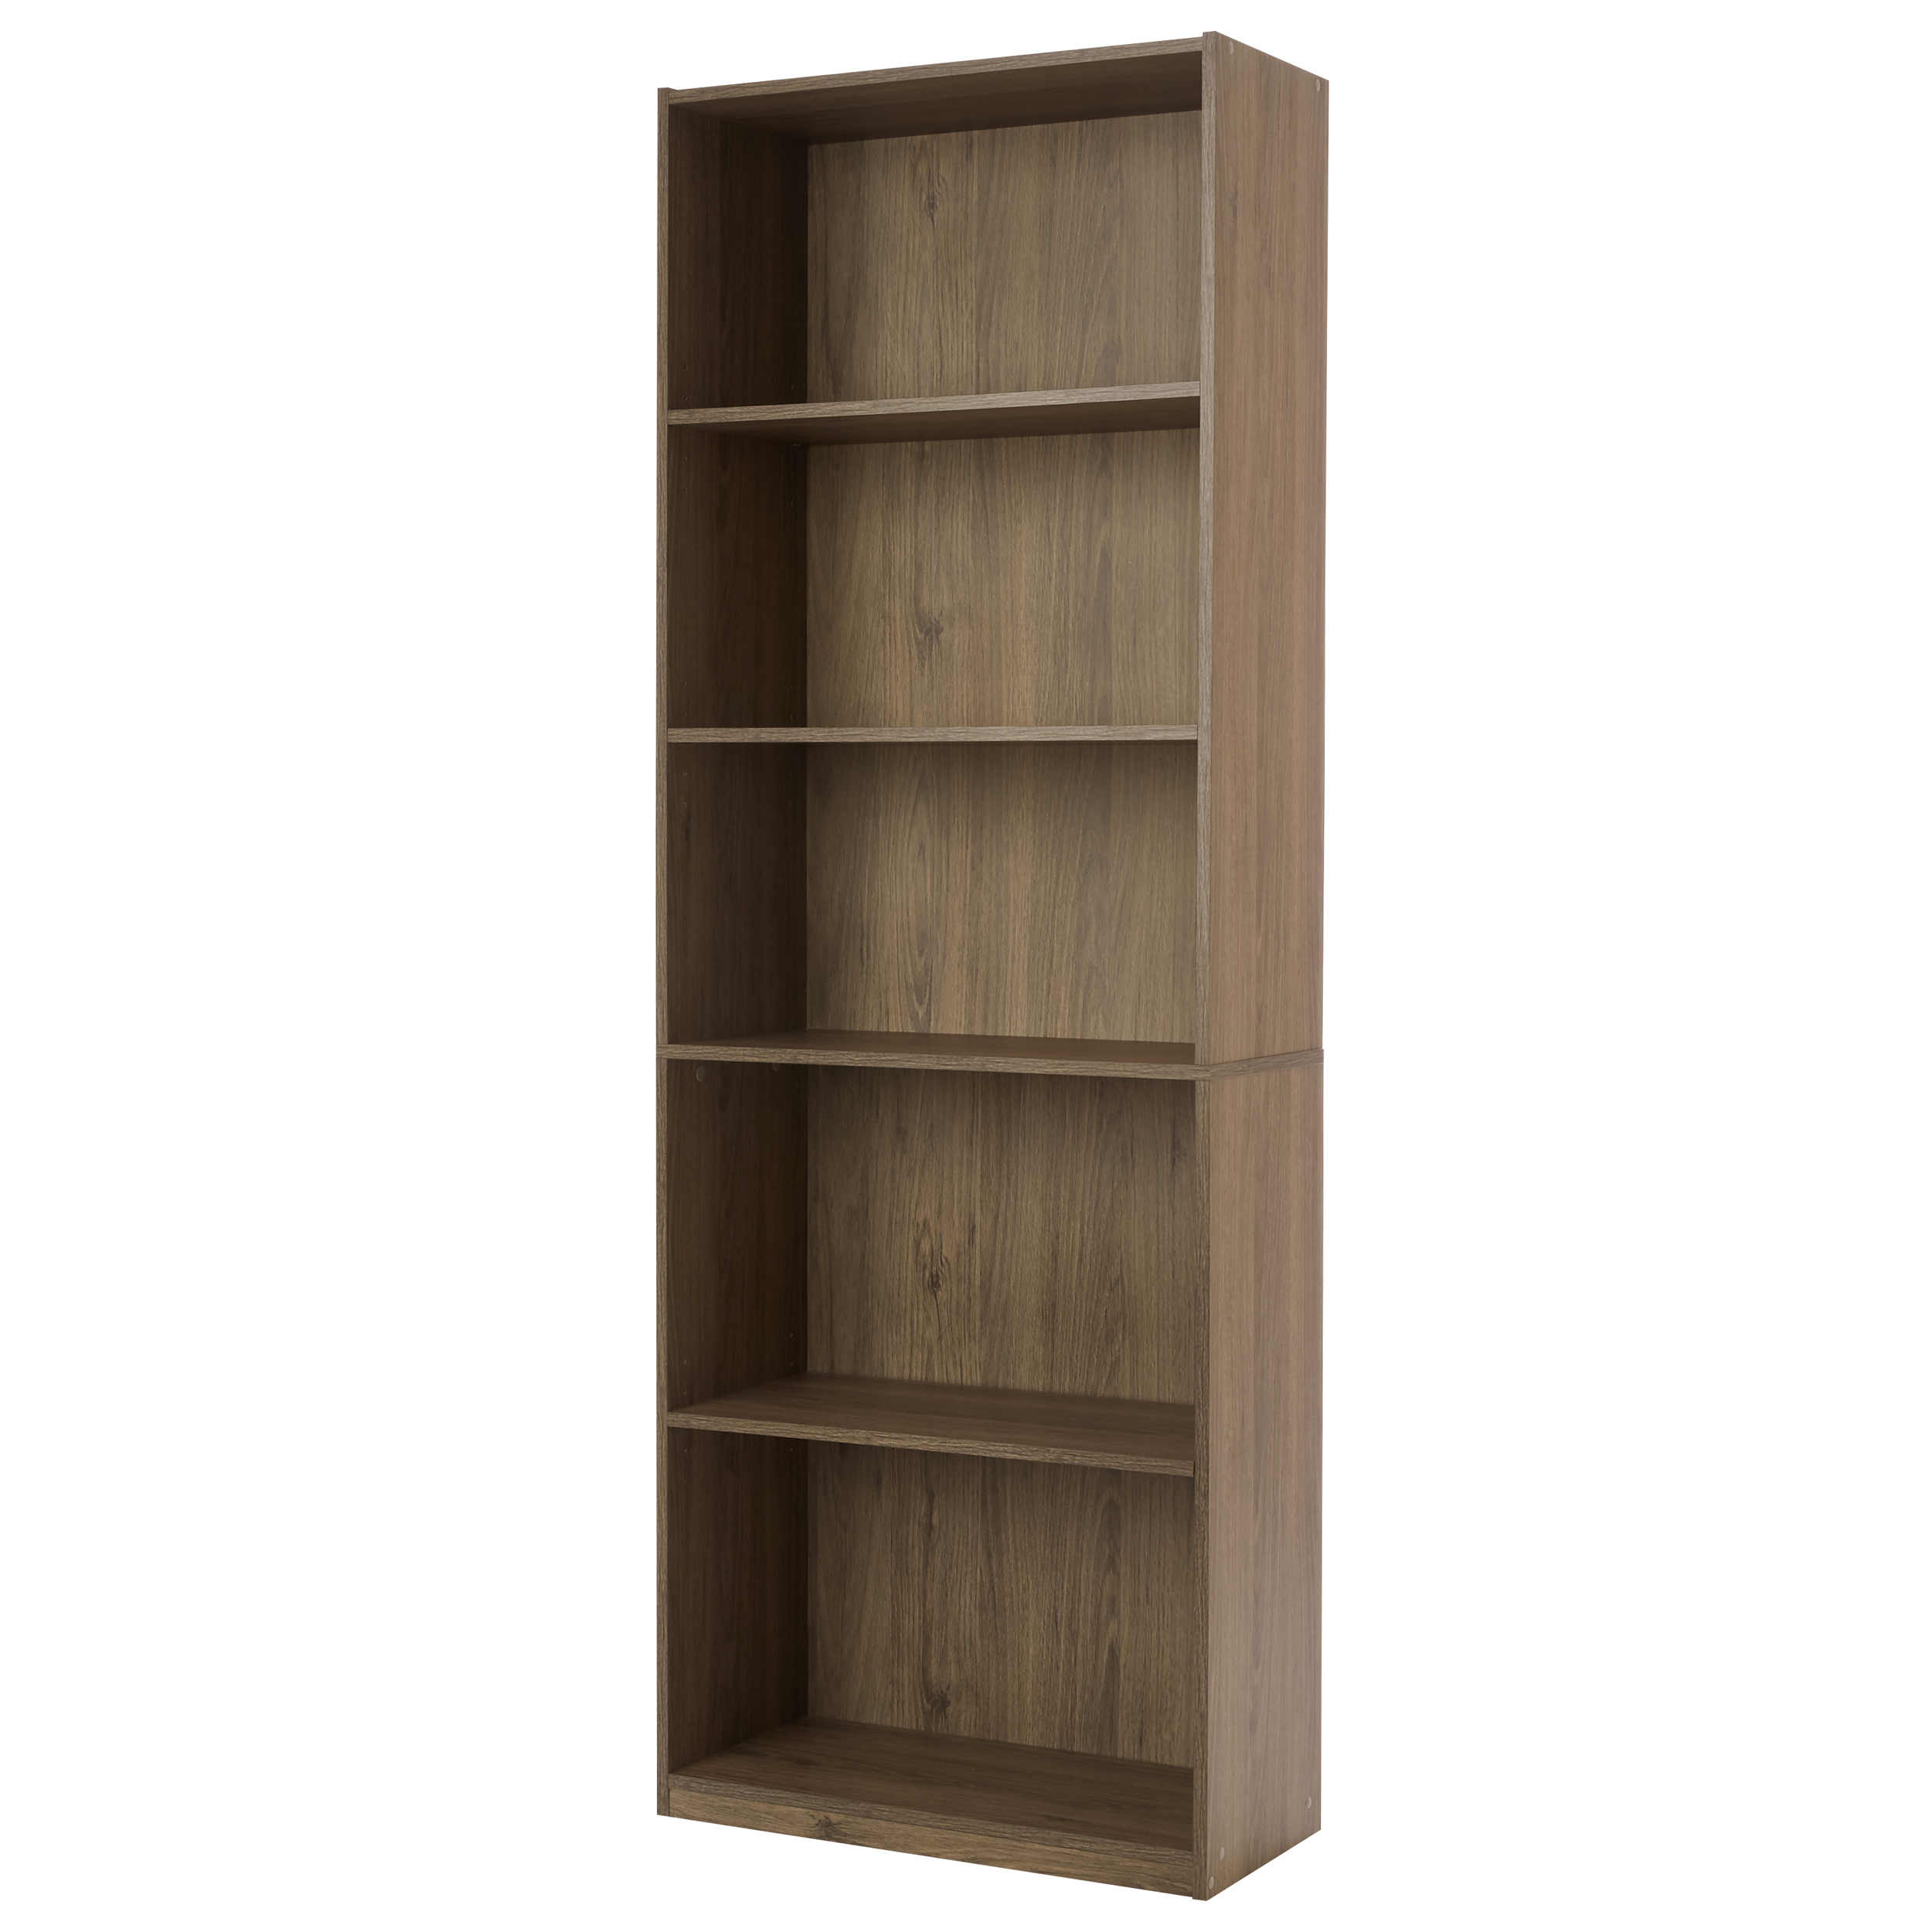 Mainstays 5 Shelf Adjustable Shelf Bookcase, Oak - image 1 of 7